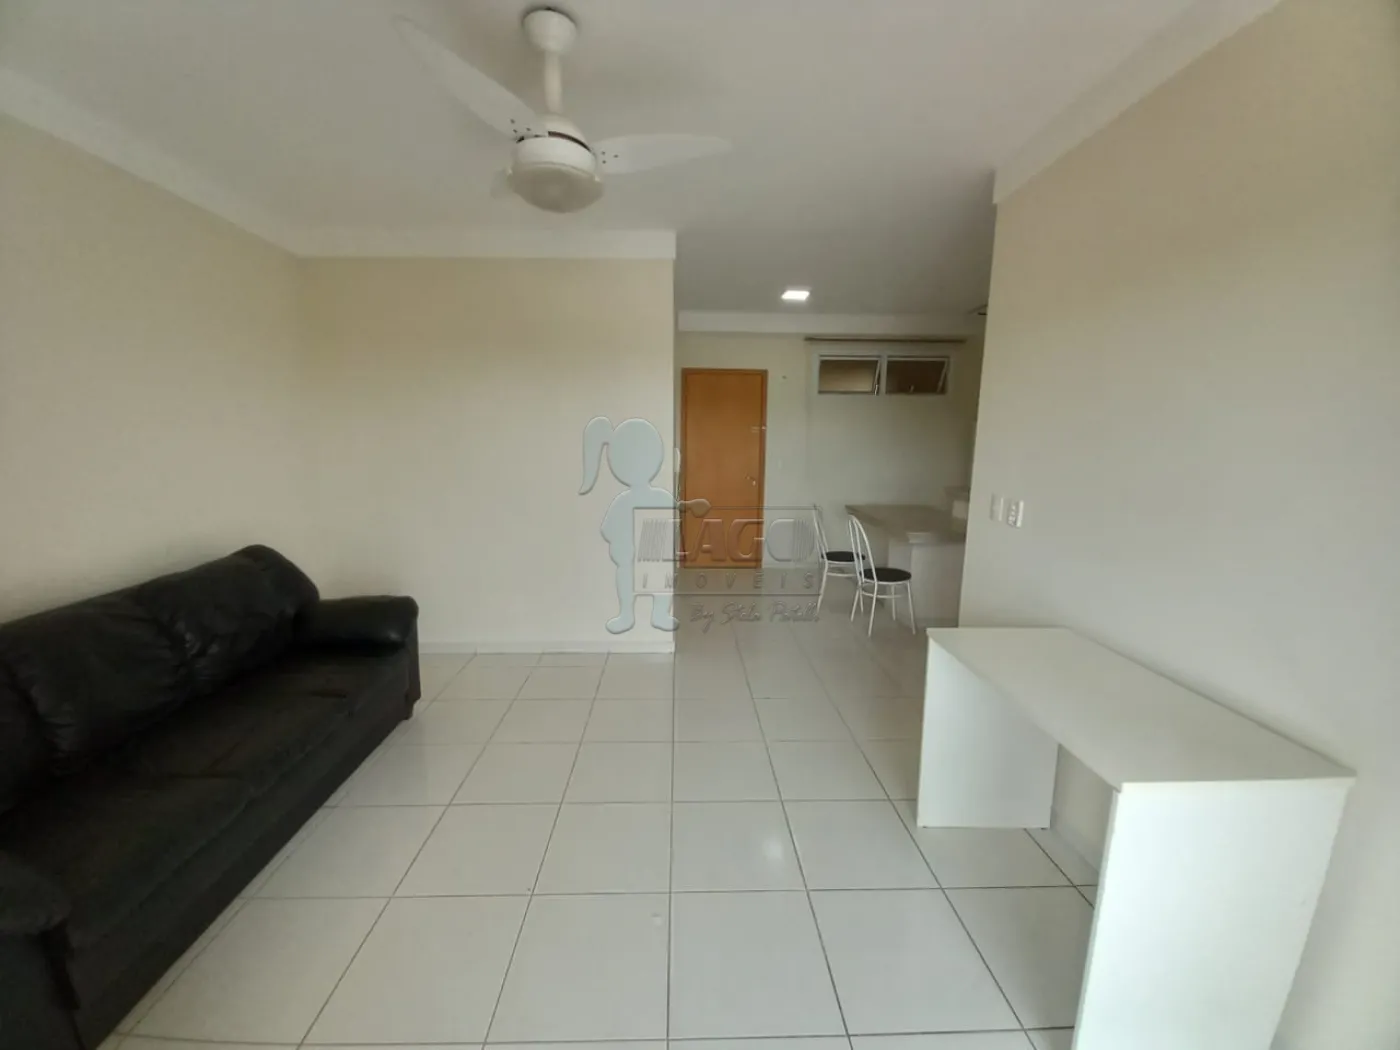 Alugar Apartamento / Kitnet em Ribeirão Preto R$ 1.400,00 - Foto 2